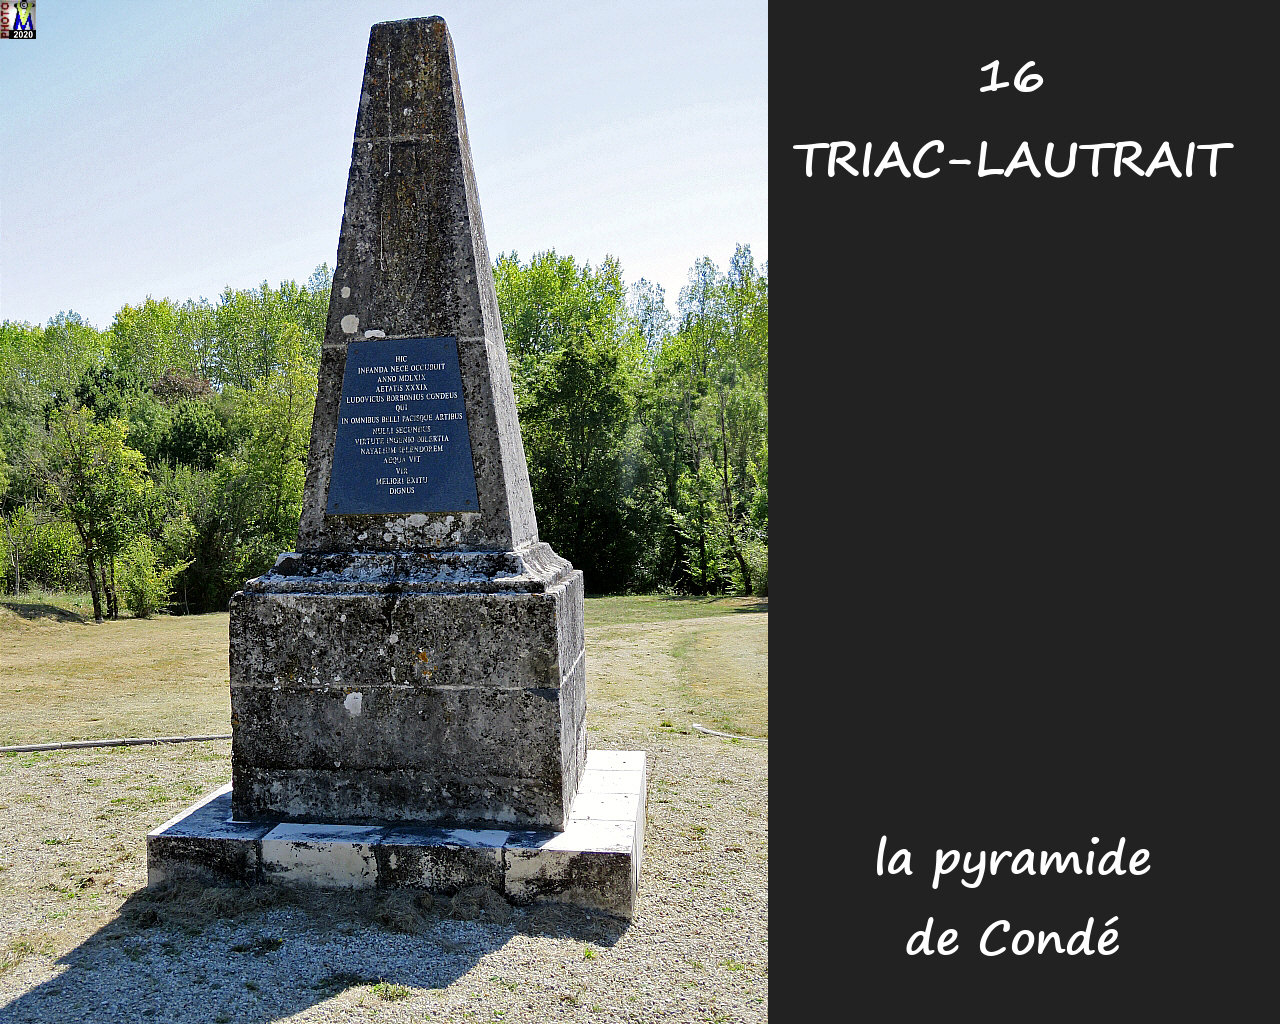 16TRIAC-LAUTRAIT_pyramide_100.jpg